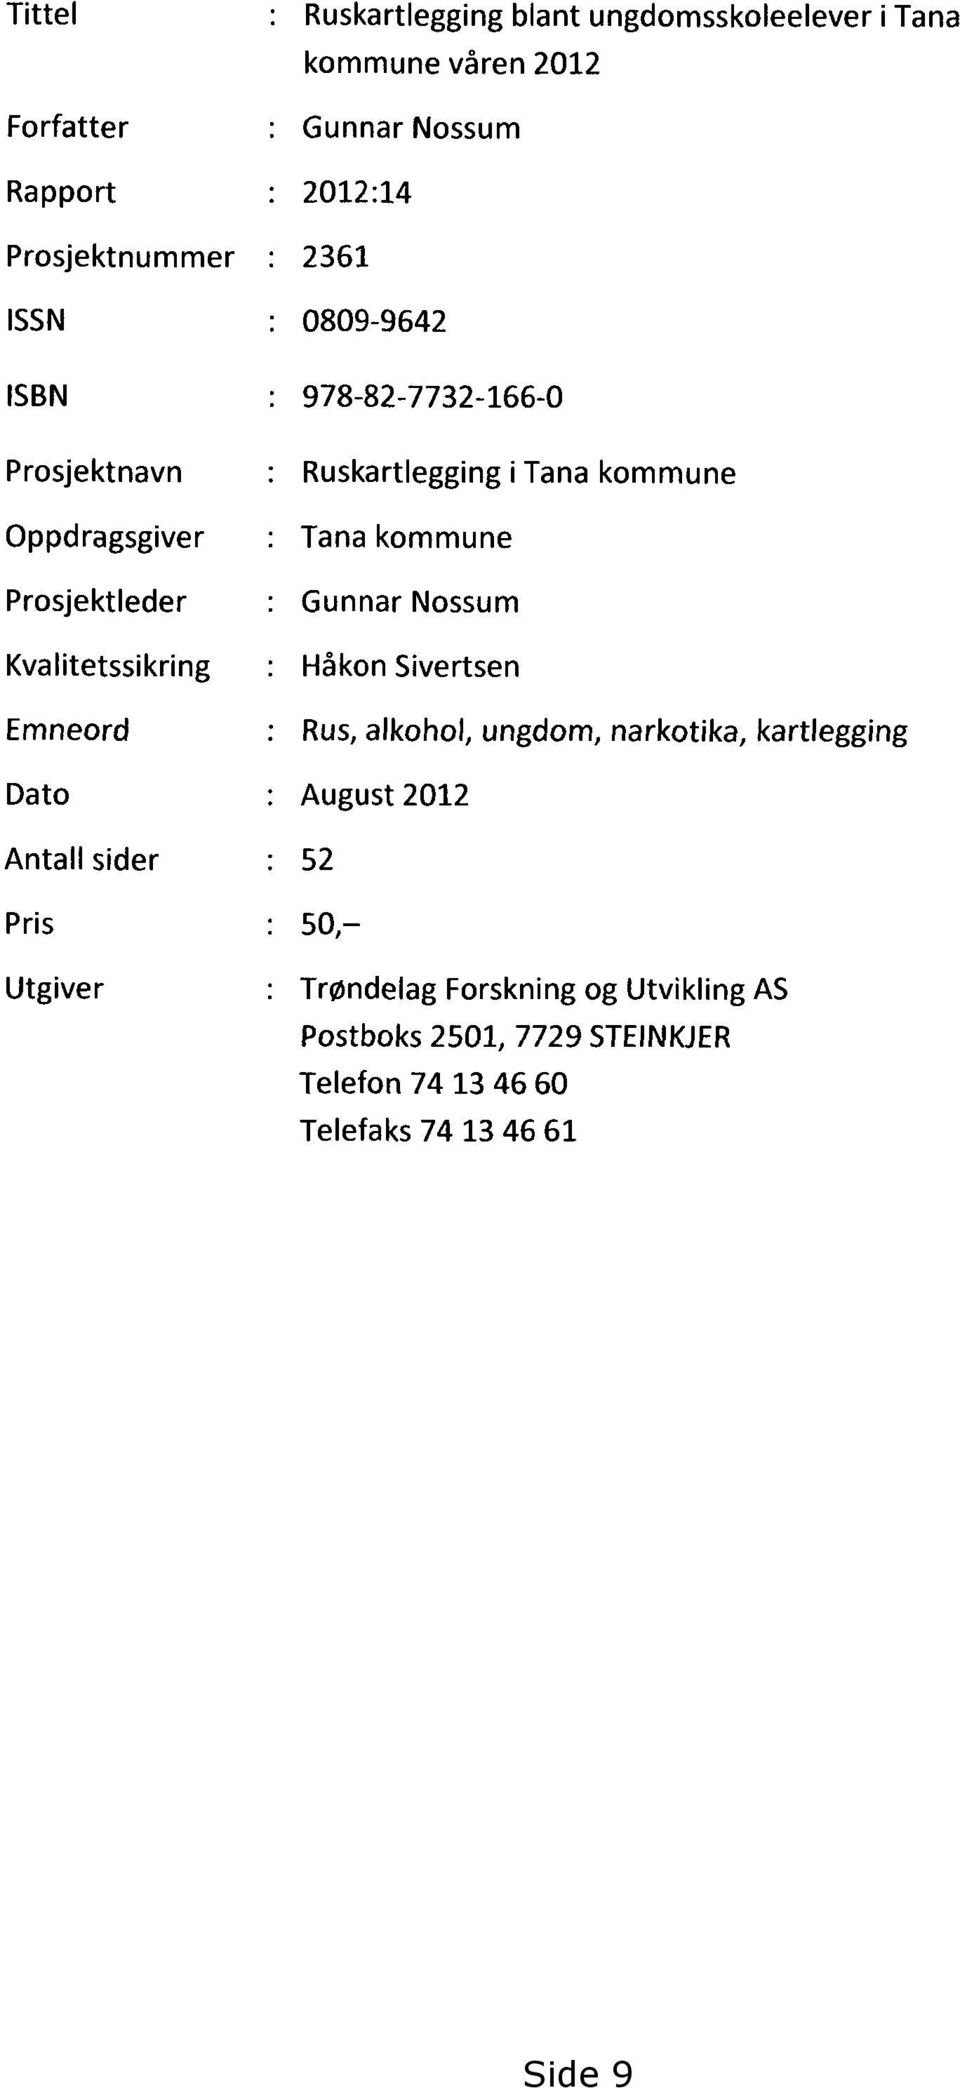 sider : Pris : Utgiver : Ruskartlegging i Tana kommune Tana kommune Gunnar Nossum Håkon Sivertsen Rus, alkohol, ungdom, narkotika,